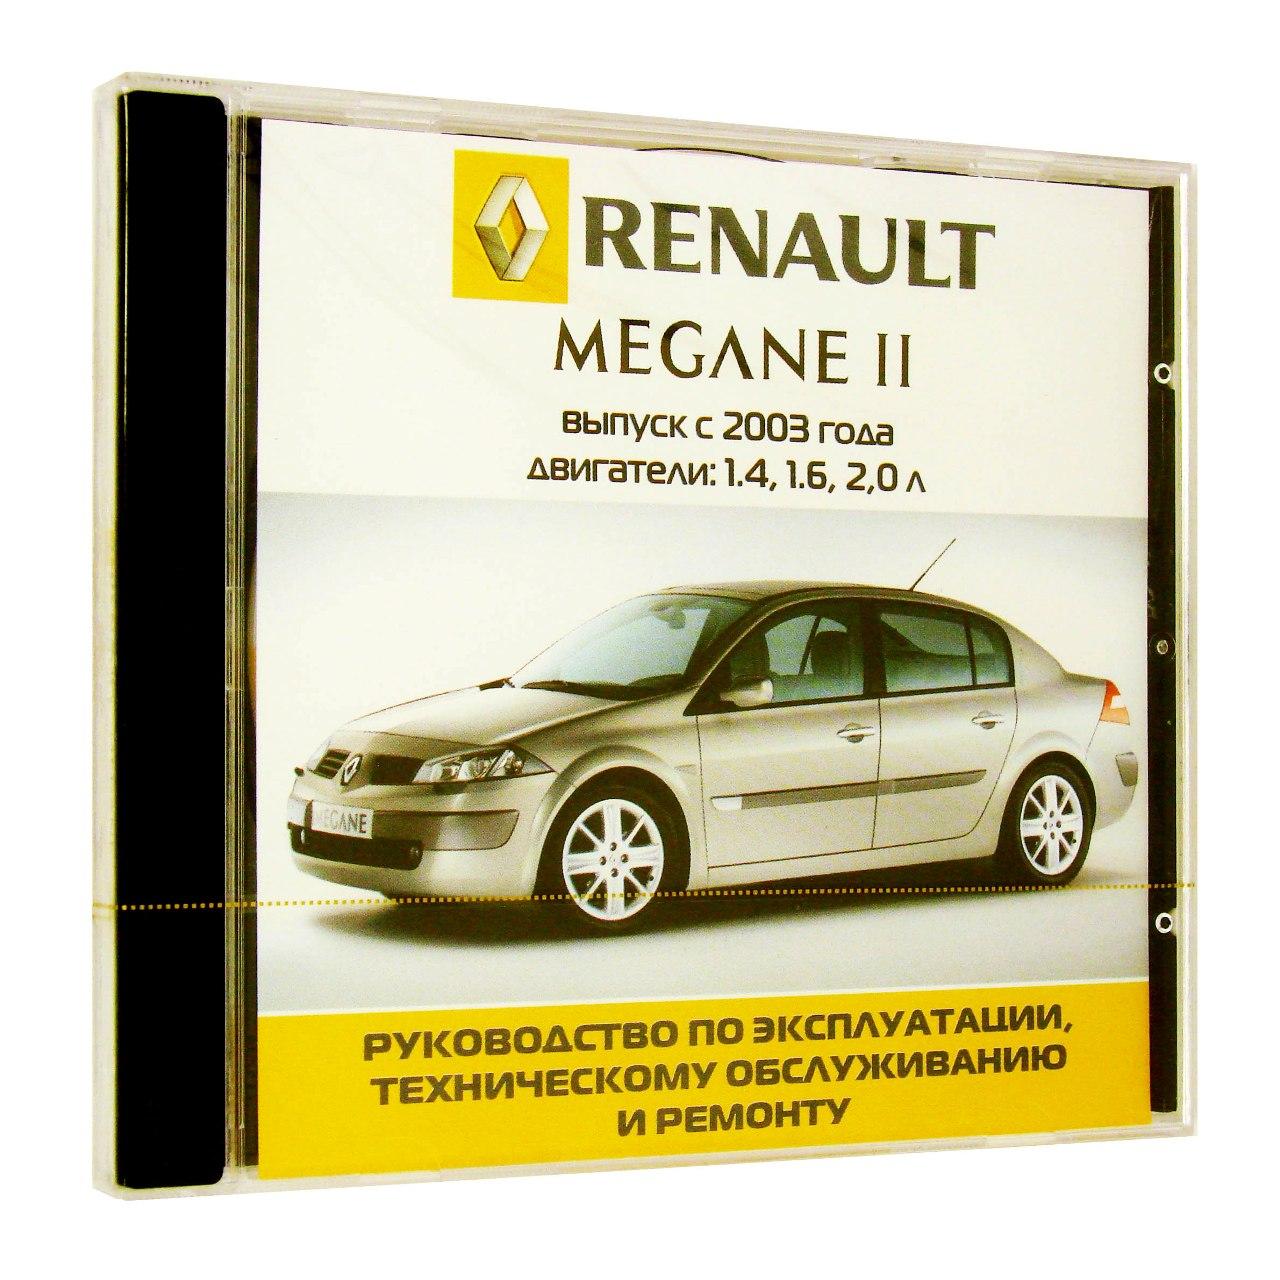 Компьютерный компакт-диск Renault Megane 2 с 2003г. Б(1.4,1.6,2.0 л). ’Школа авторемонта’. (ПК), фирма "Третий Рим", 1CD